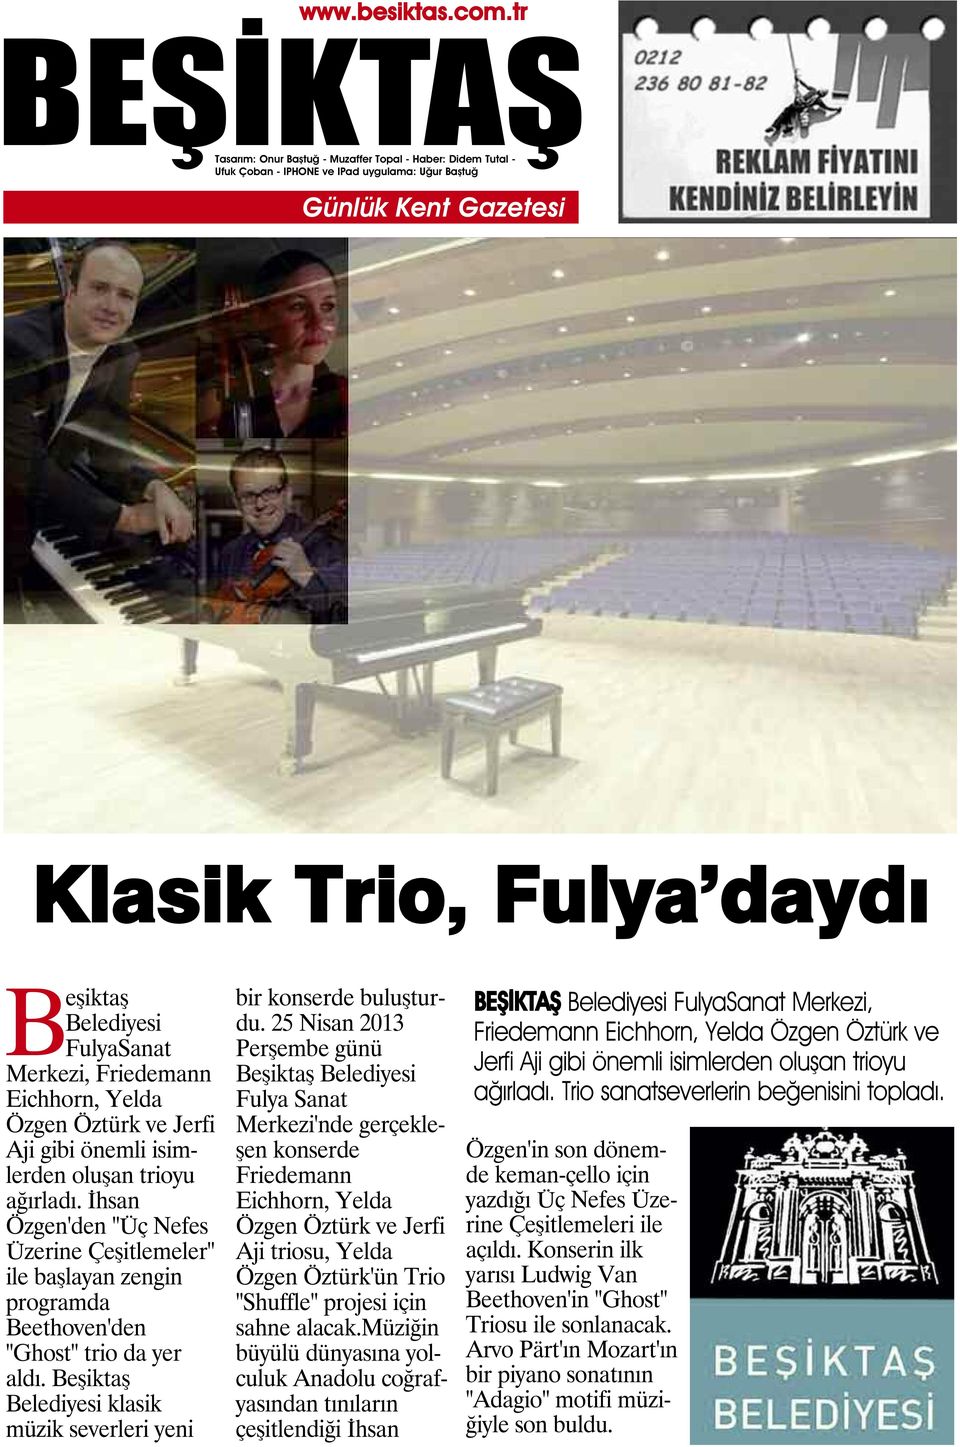 25 Nisan 2013 Perşembe günü Beşiktaş Belediyesi Fulya Sanat Merkezi'nde gerçekleşen konserde Friedemann Eichhorn, Yelda Özgen Öztürk ve Jerfi Aji triosu, Yelda Özgen Öztürk'ün Trio "Shuffle" projesi